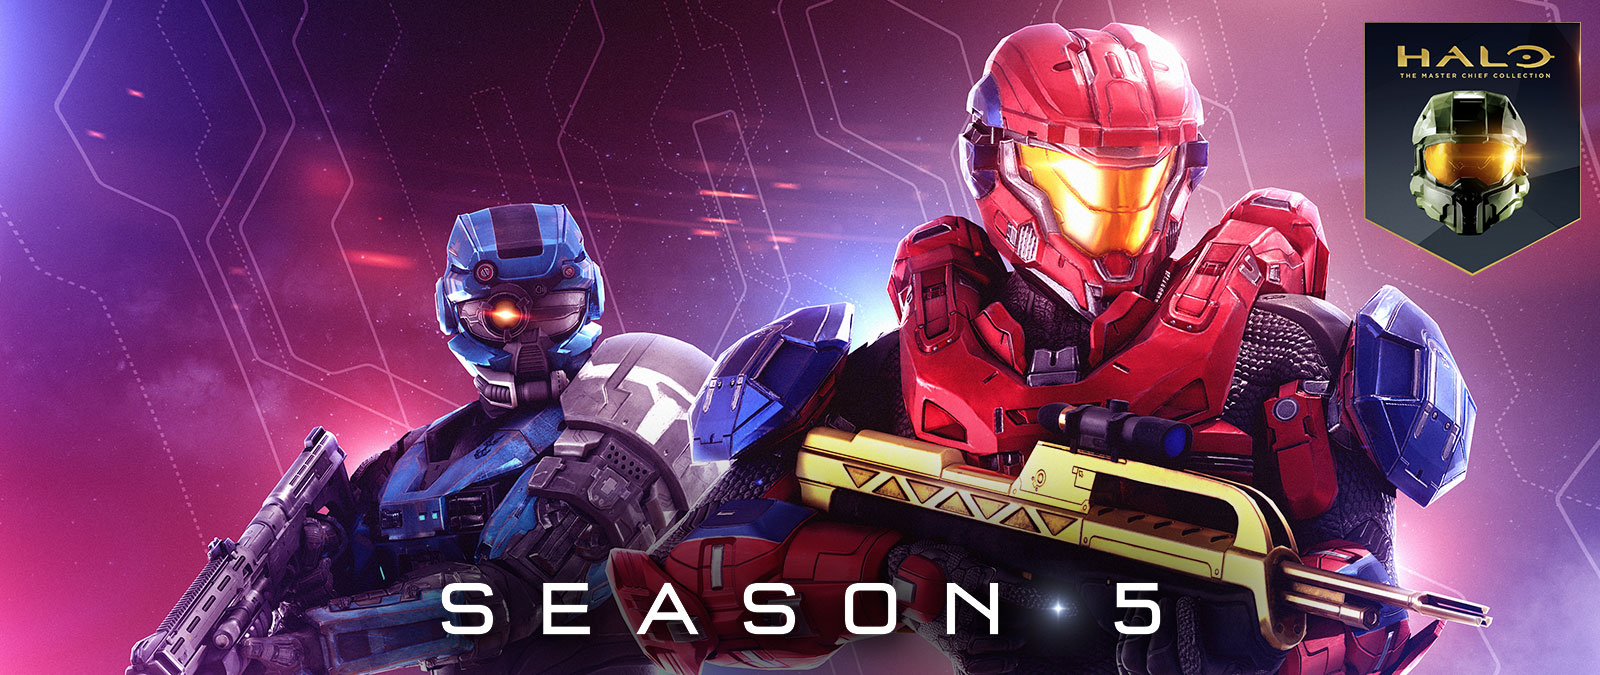 Halo: The Master Chief Collection, 6. sezóna, červený sparťan drží zlatou bitevní pušku a modrý sparťan má nasazenou speciální přilbu s jedním okem